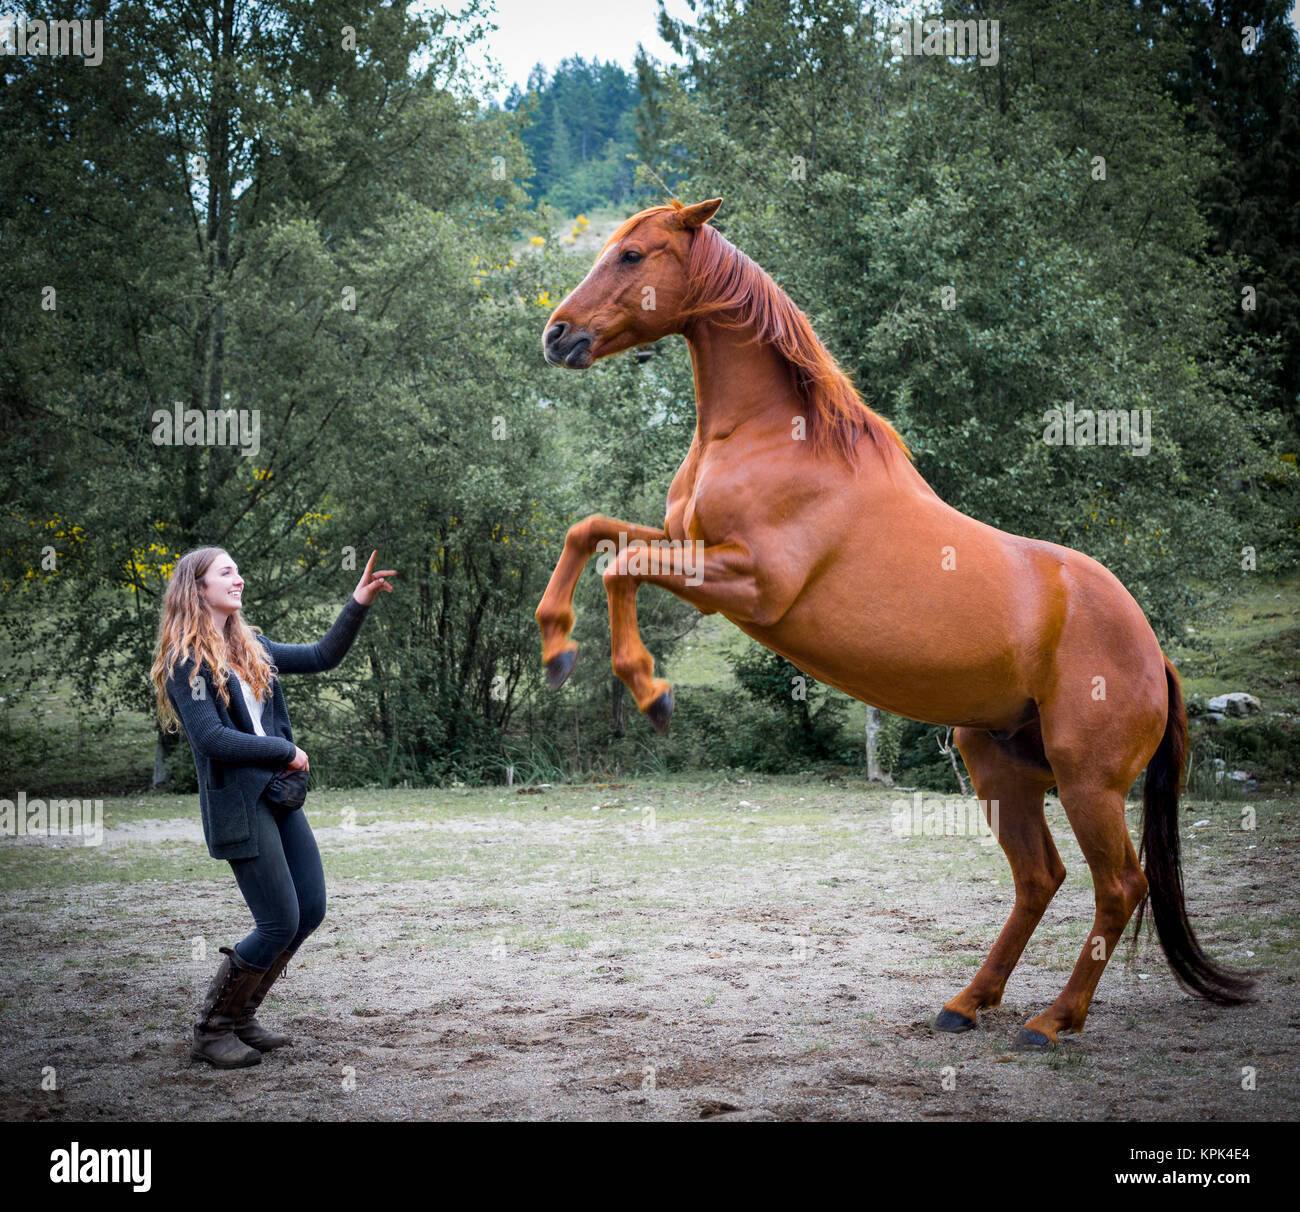 Addestrare un cavallo immagini e fotografie stock ad alta risoluzione -  Alamy